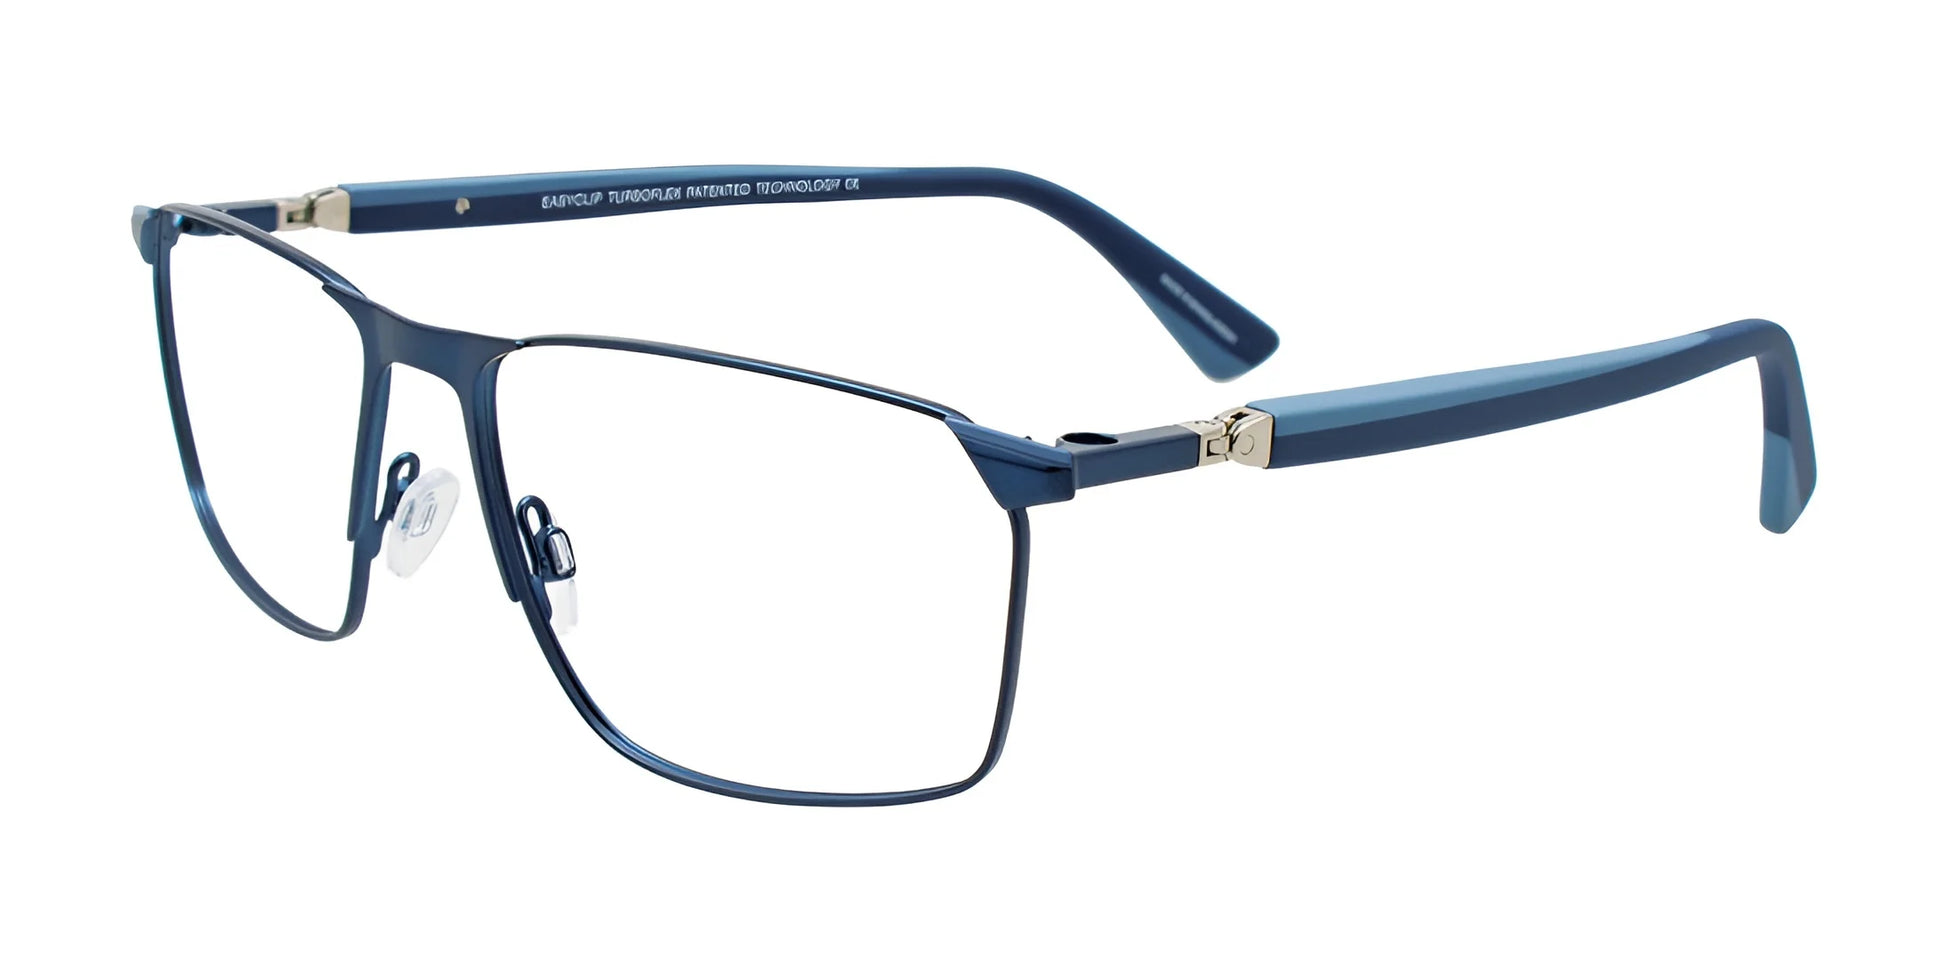 EasyClip EC652 Eyeglasses Dark Blue & Light Blue